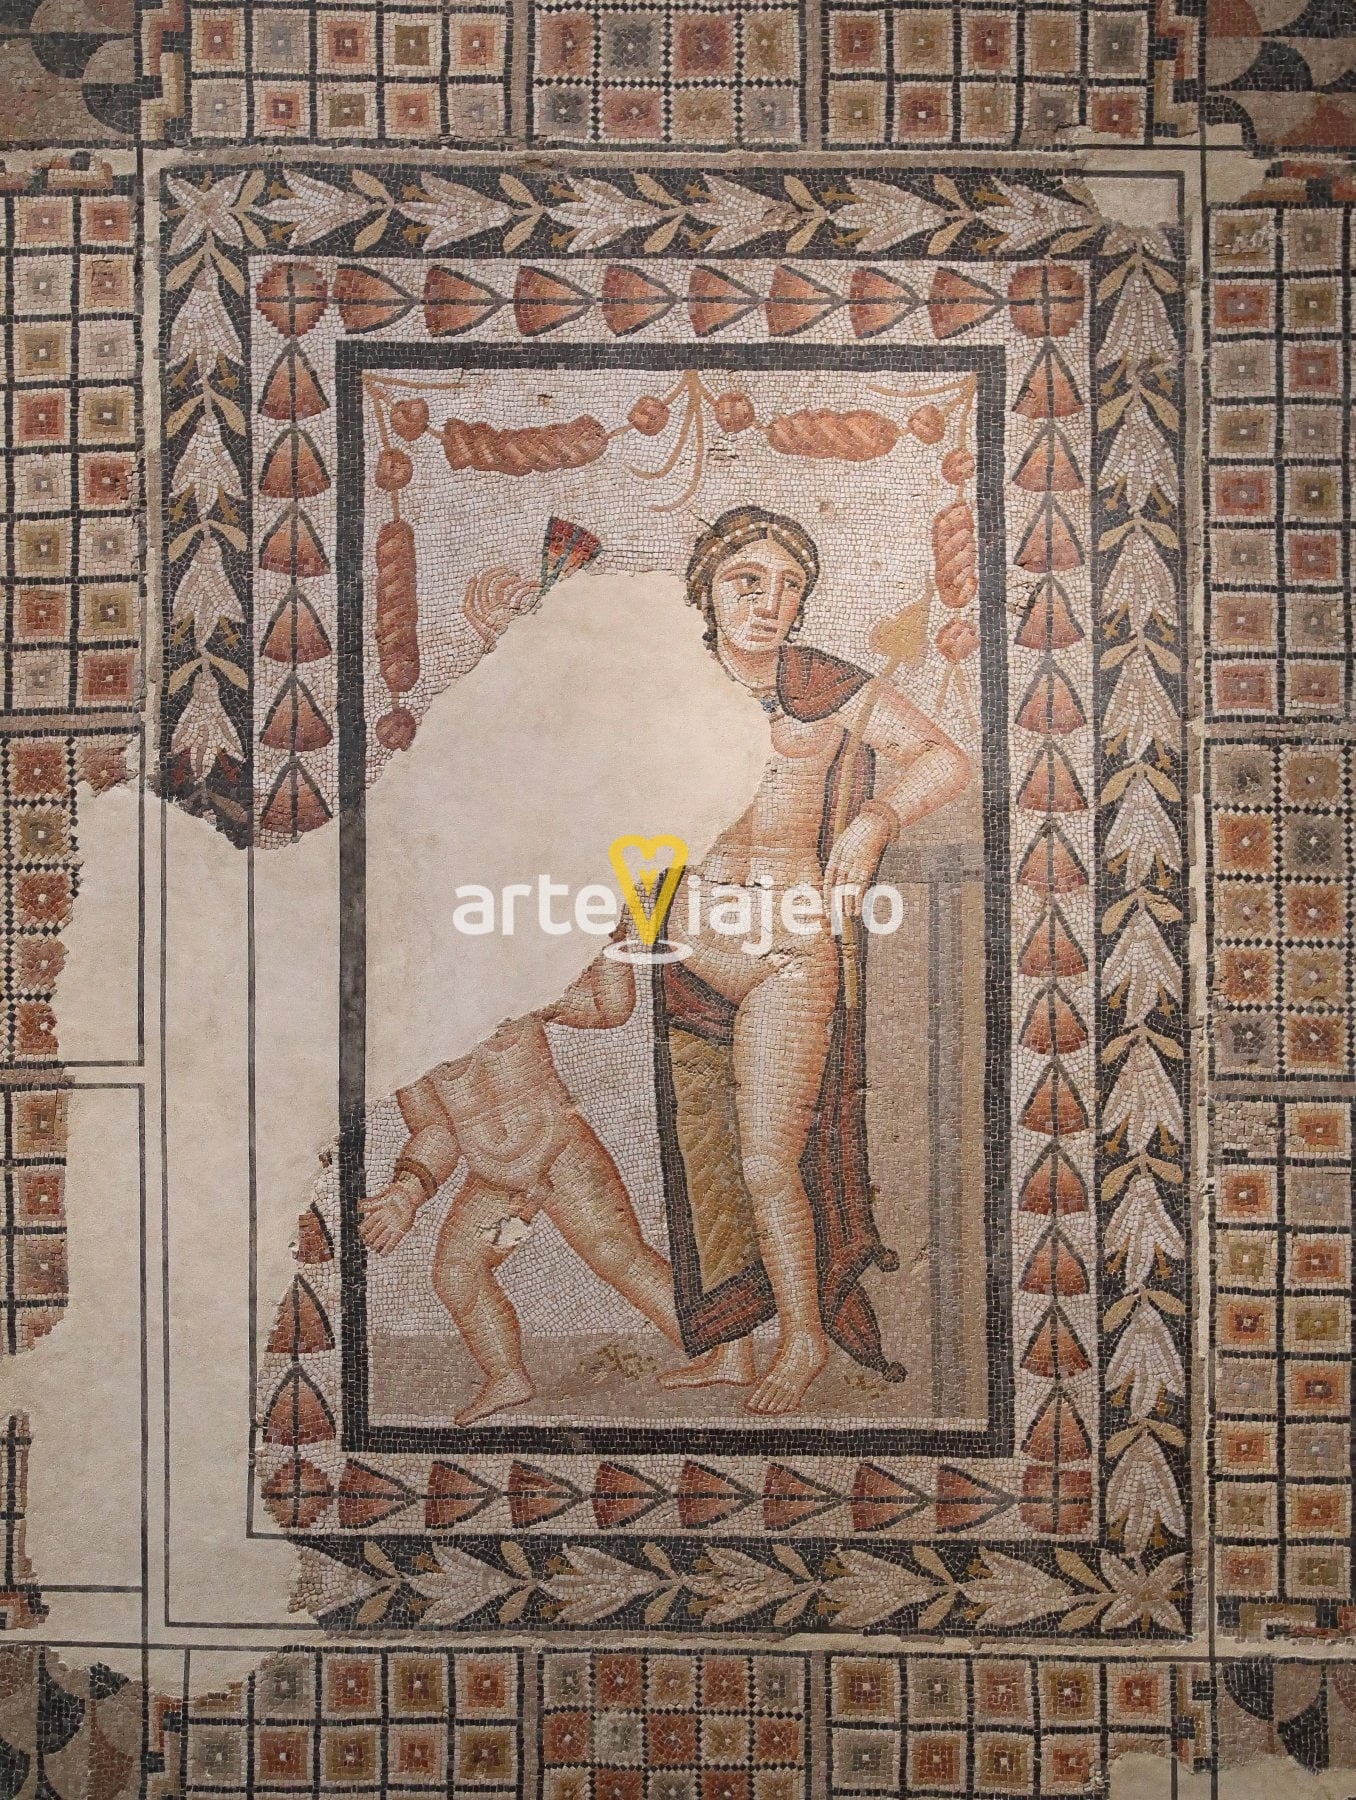 mosaico de venus y eros, villa fortunatus